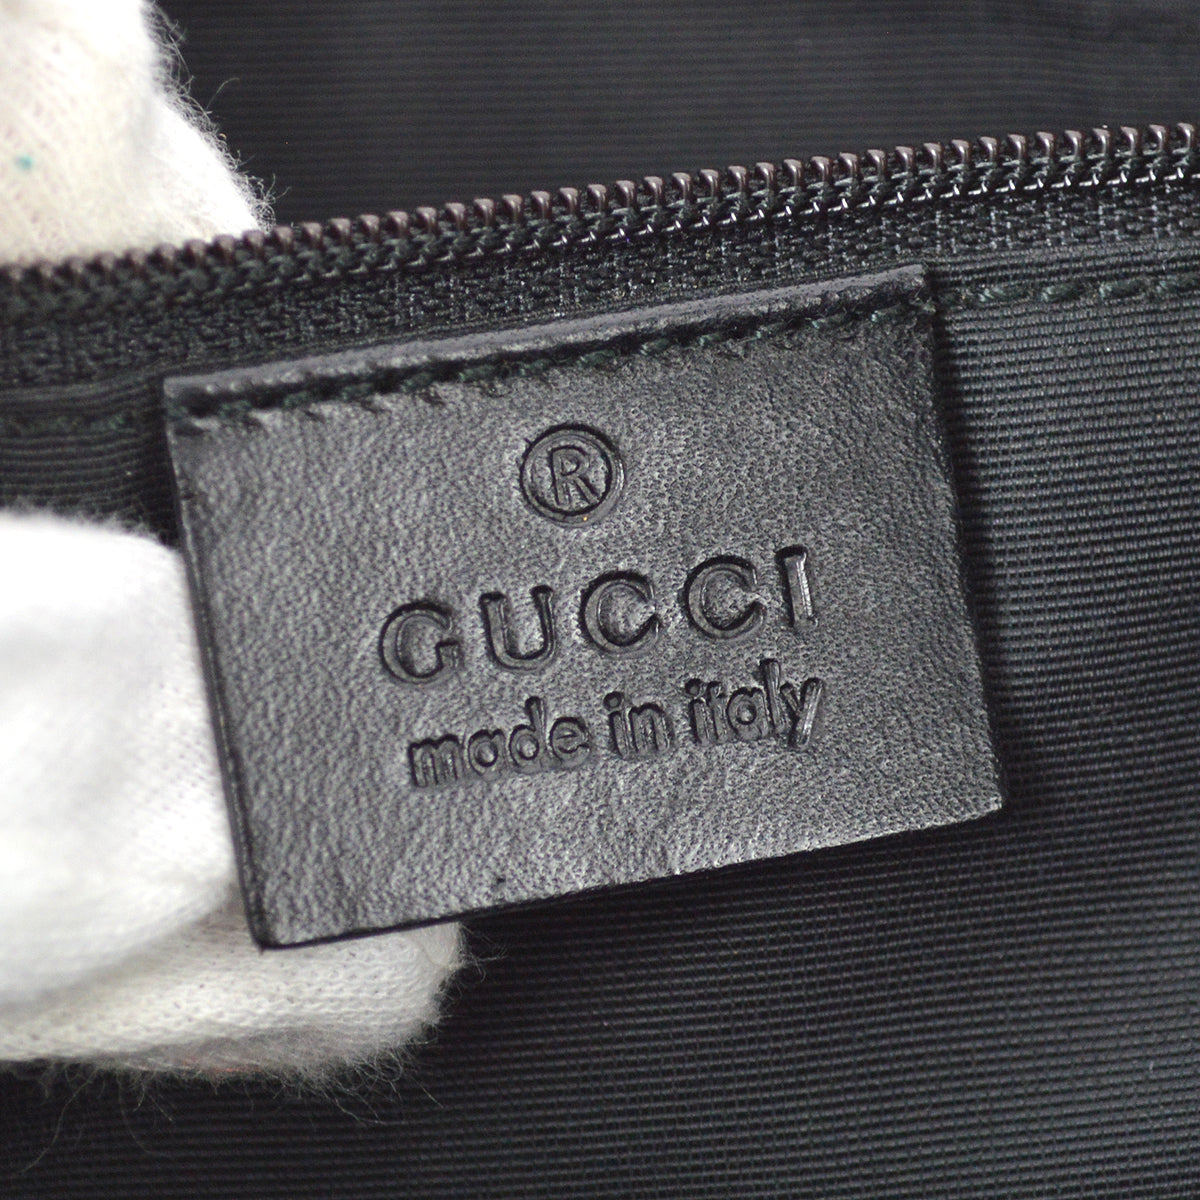 Gucci Black GG Hobo Handbag